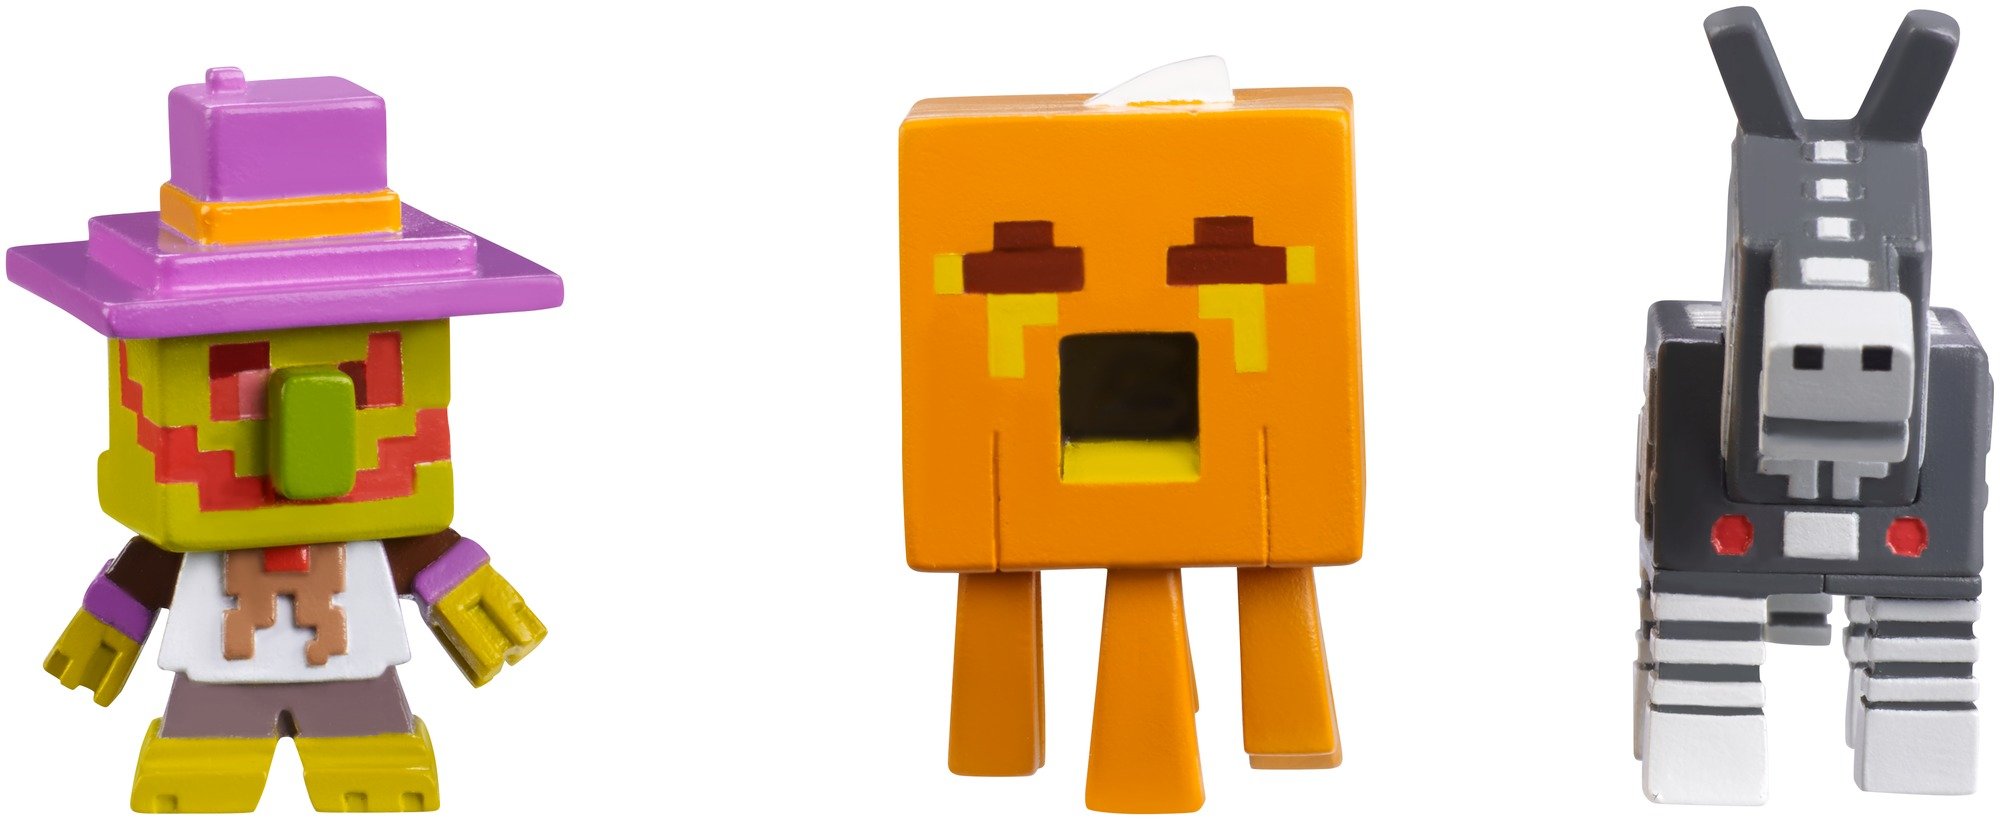 Minecraft Halloween Series Action Figure (3 Pack) - Village Watcher, Pumpkin Ghast & Robot Donkey